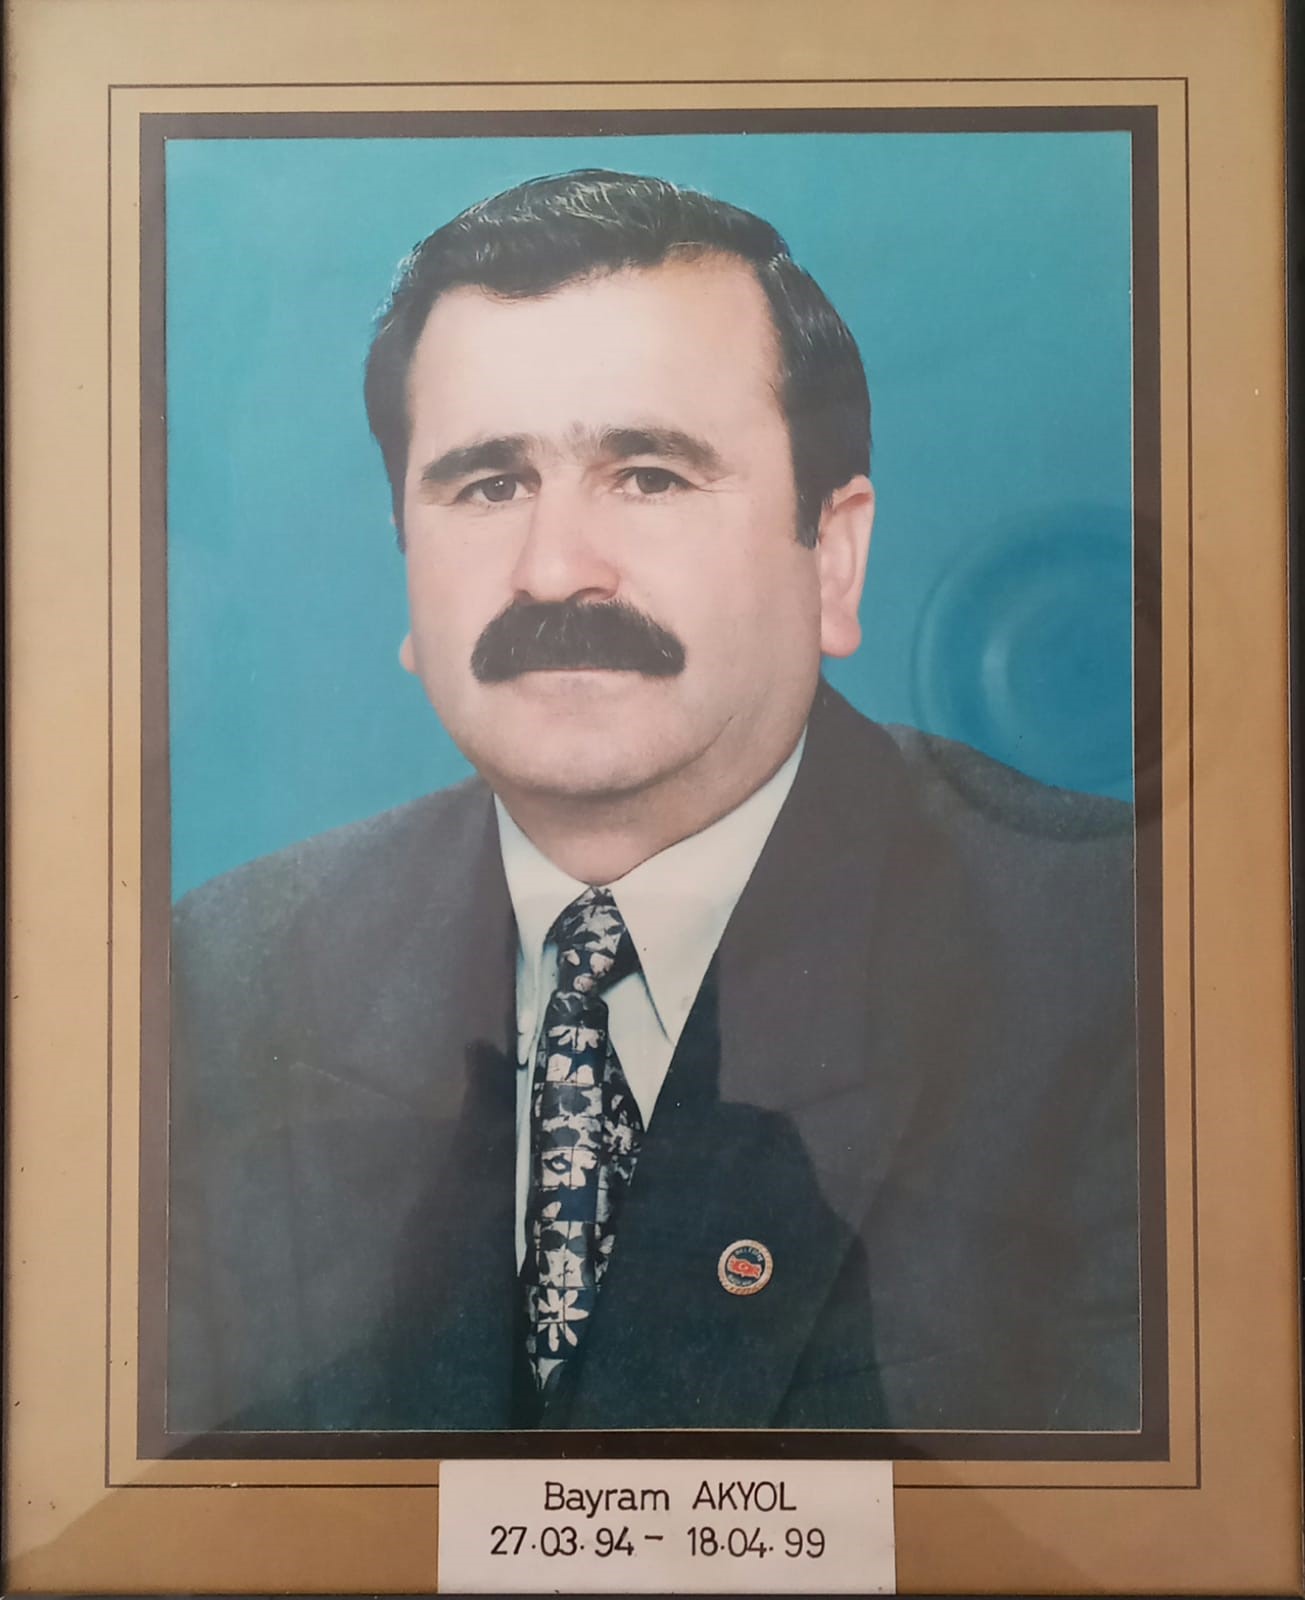 Bayram AKYOL (27.04.1994 — 18.04.1999)